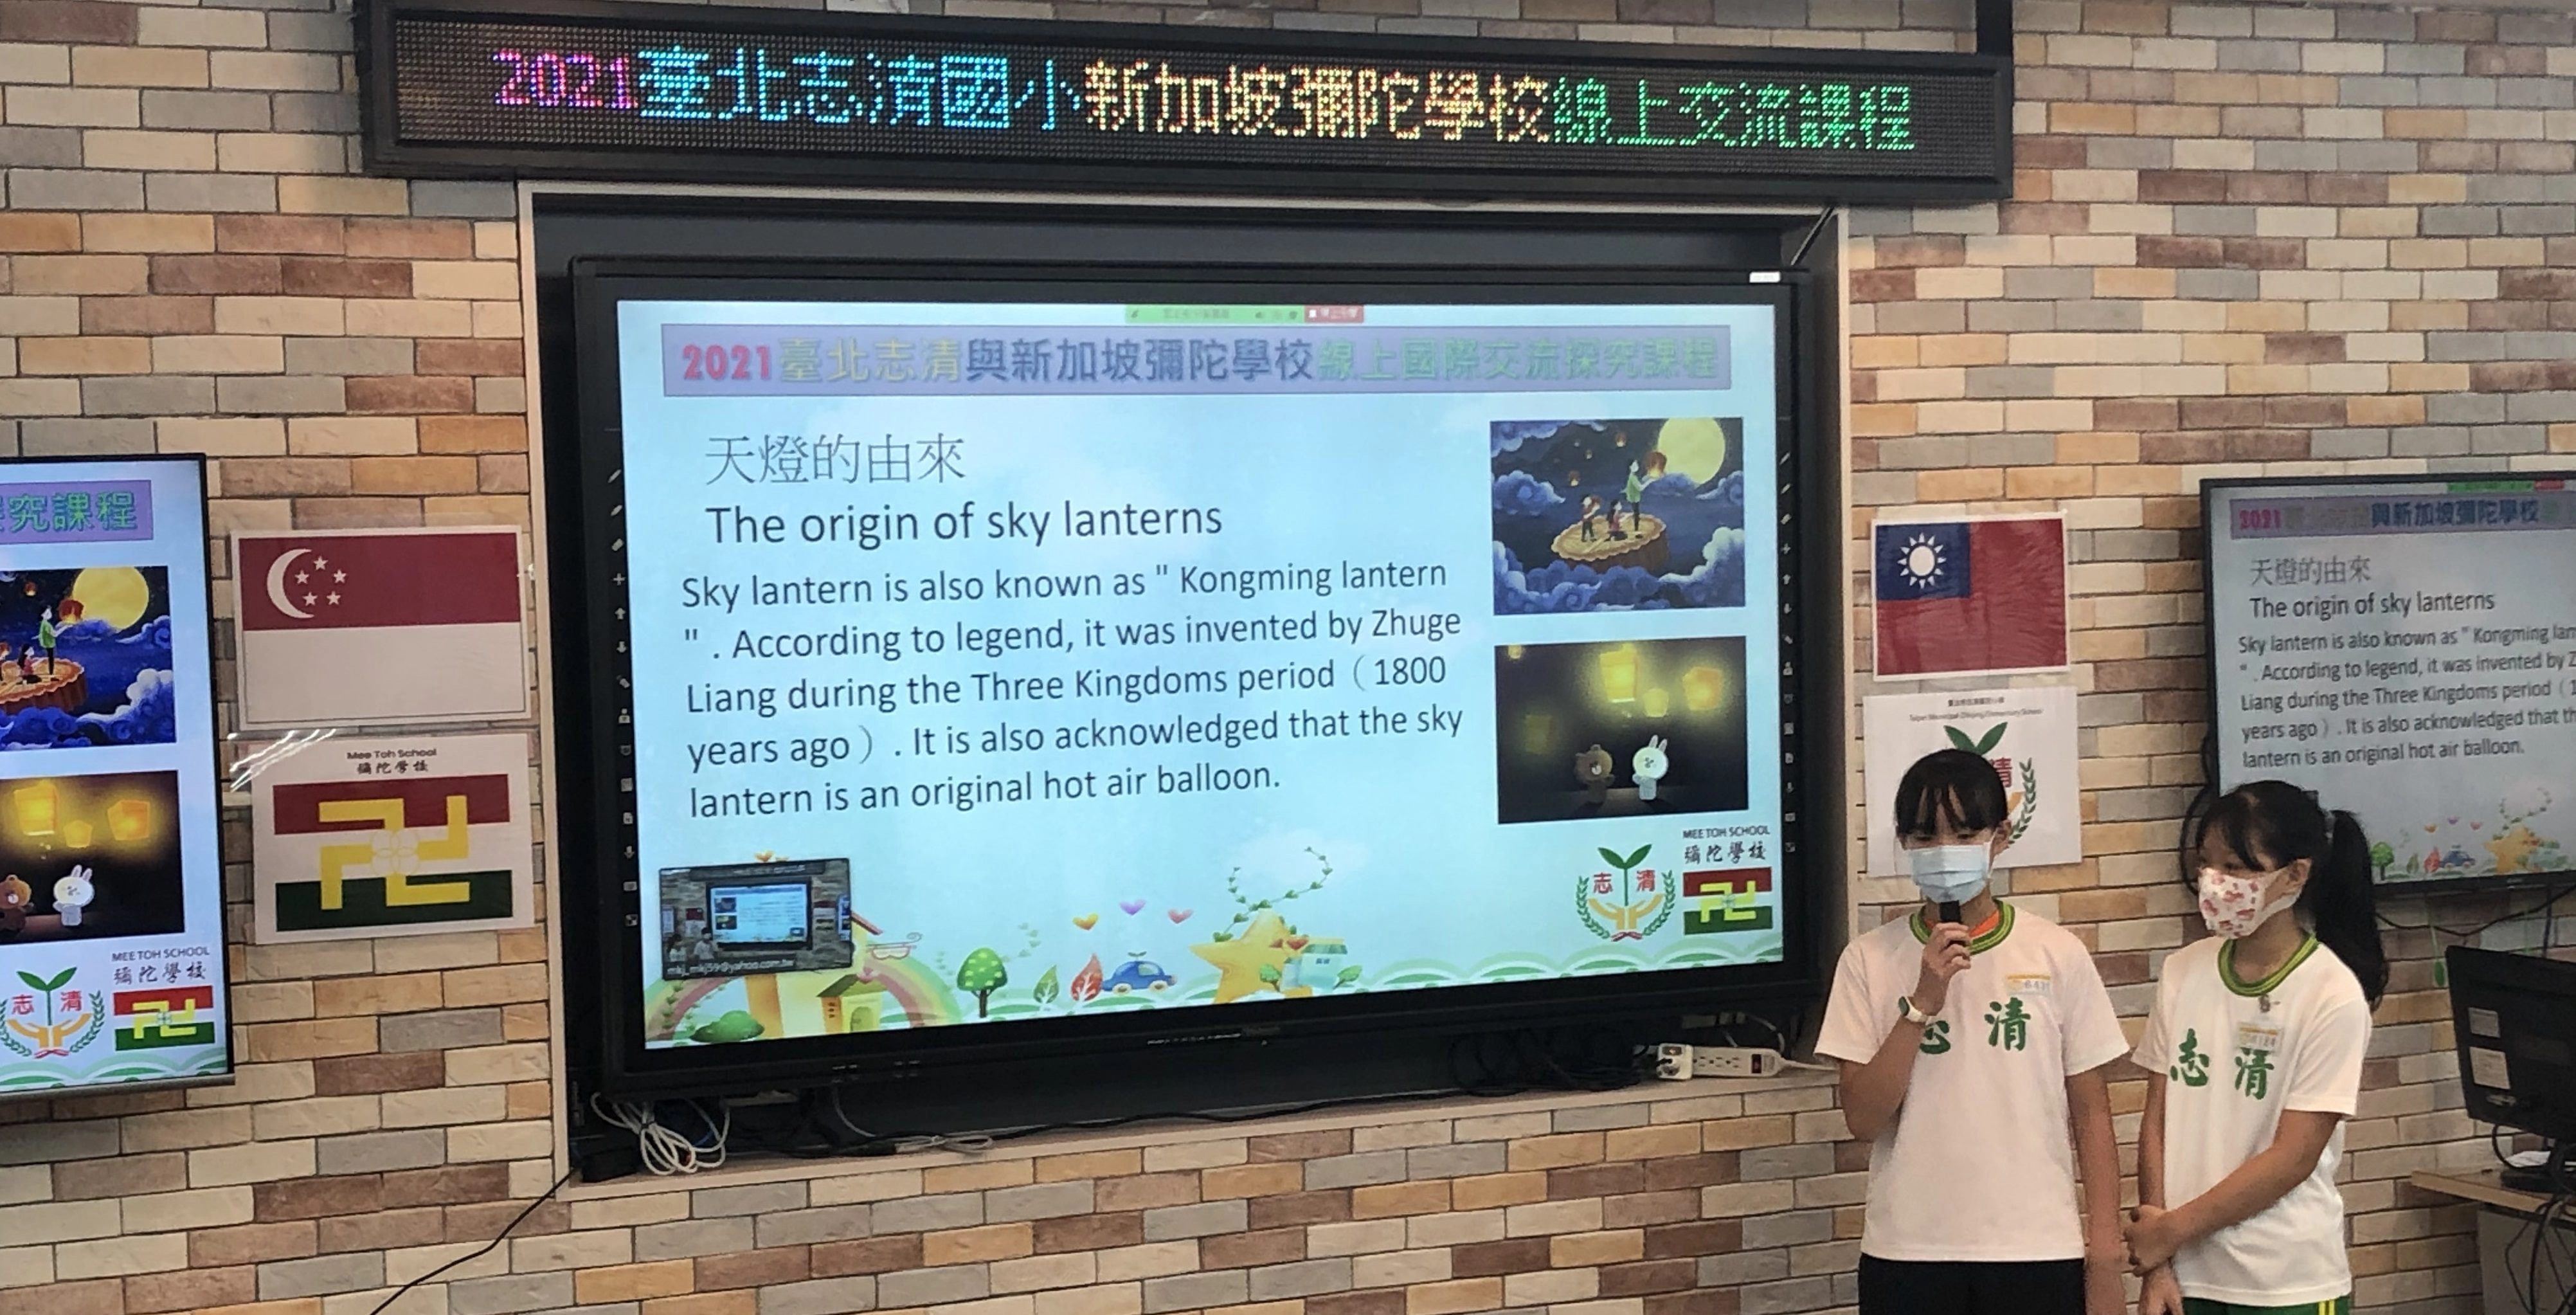 志清學生以英文介紹天燈的典故。